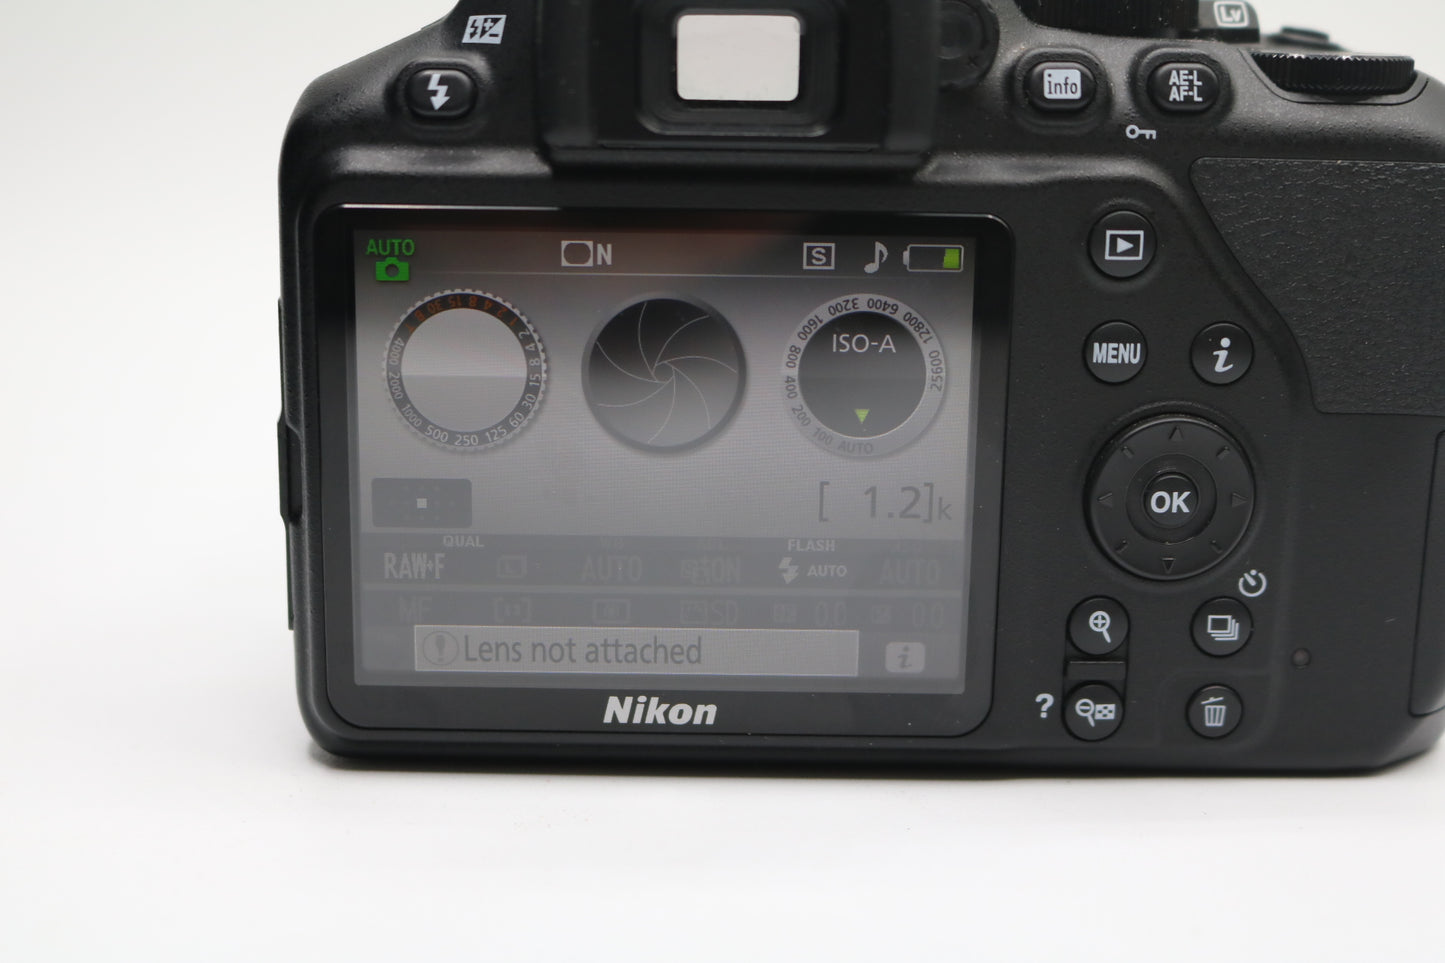 Nikon D3500 Camera With Nikon AF-P Nikkor 18-55mm 1:3.5-5.6 G Lens